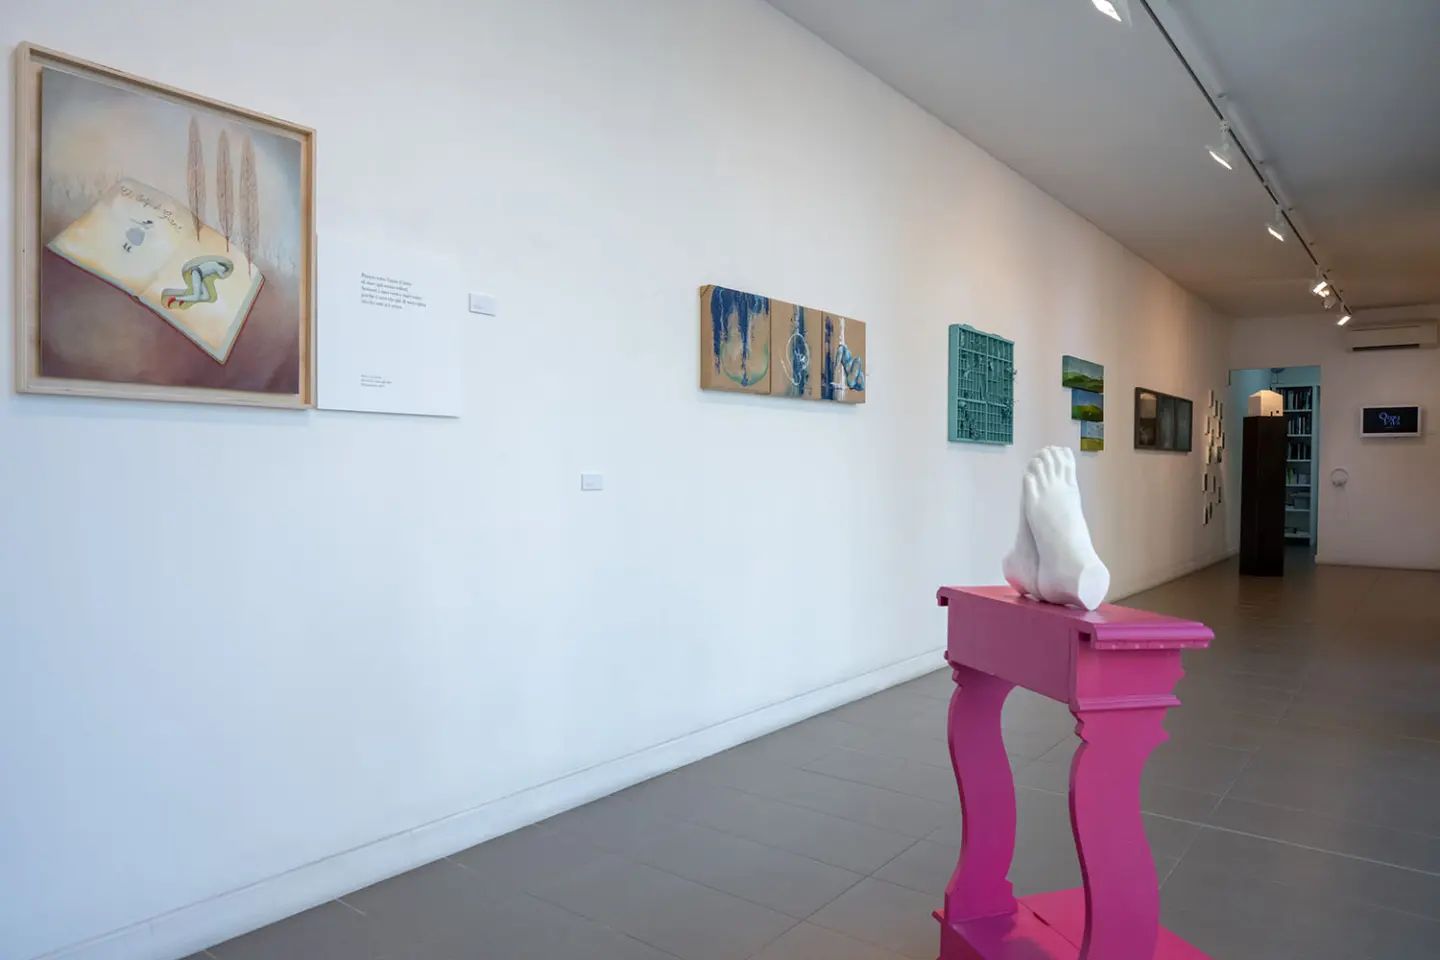 Il Sogno del latte, exhibition view at Galleria Romberg, Latina